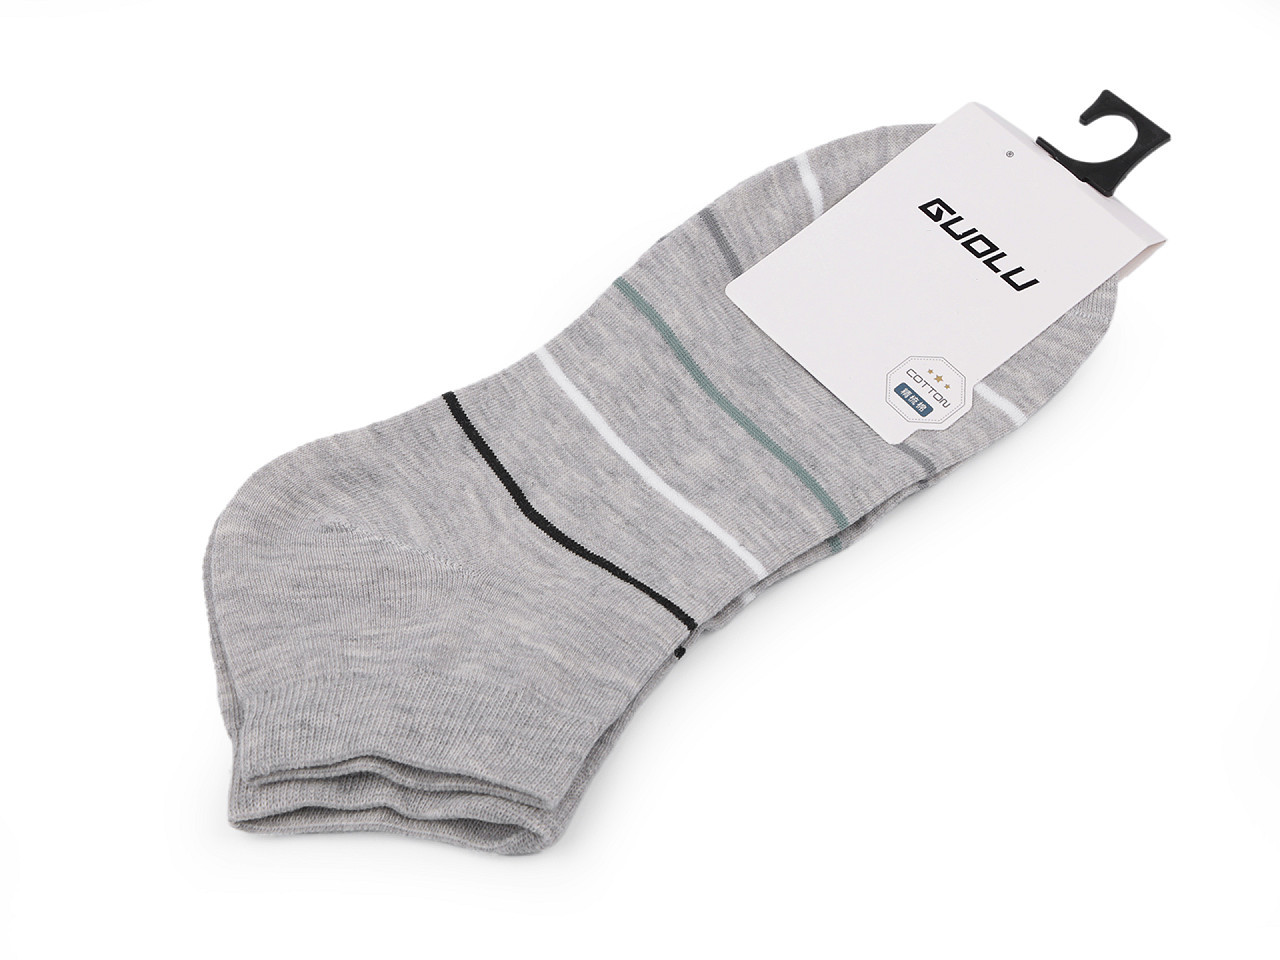 Pánské / chlapecké bavlněné ponožky kotníkové, barva 7 šedá světlá proužky